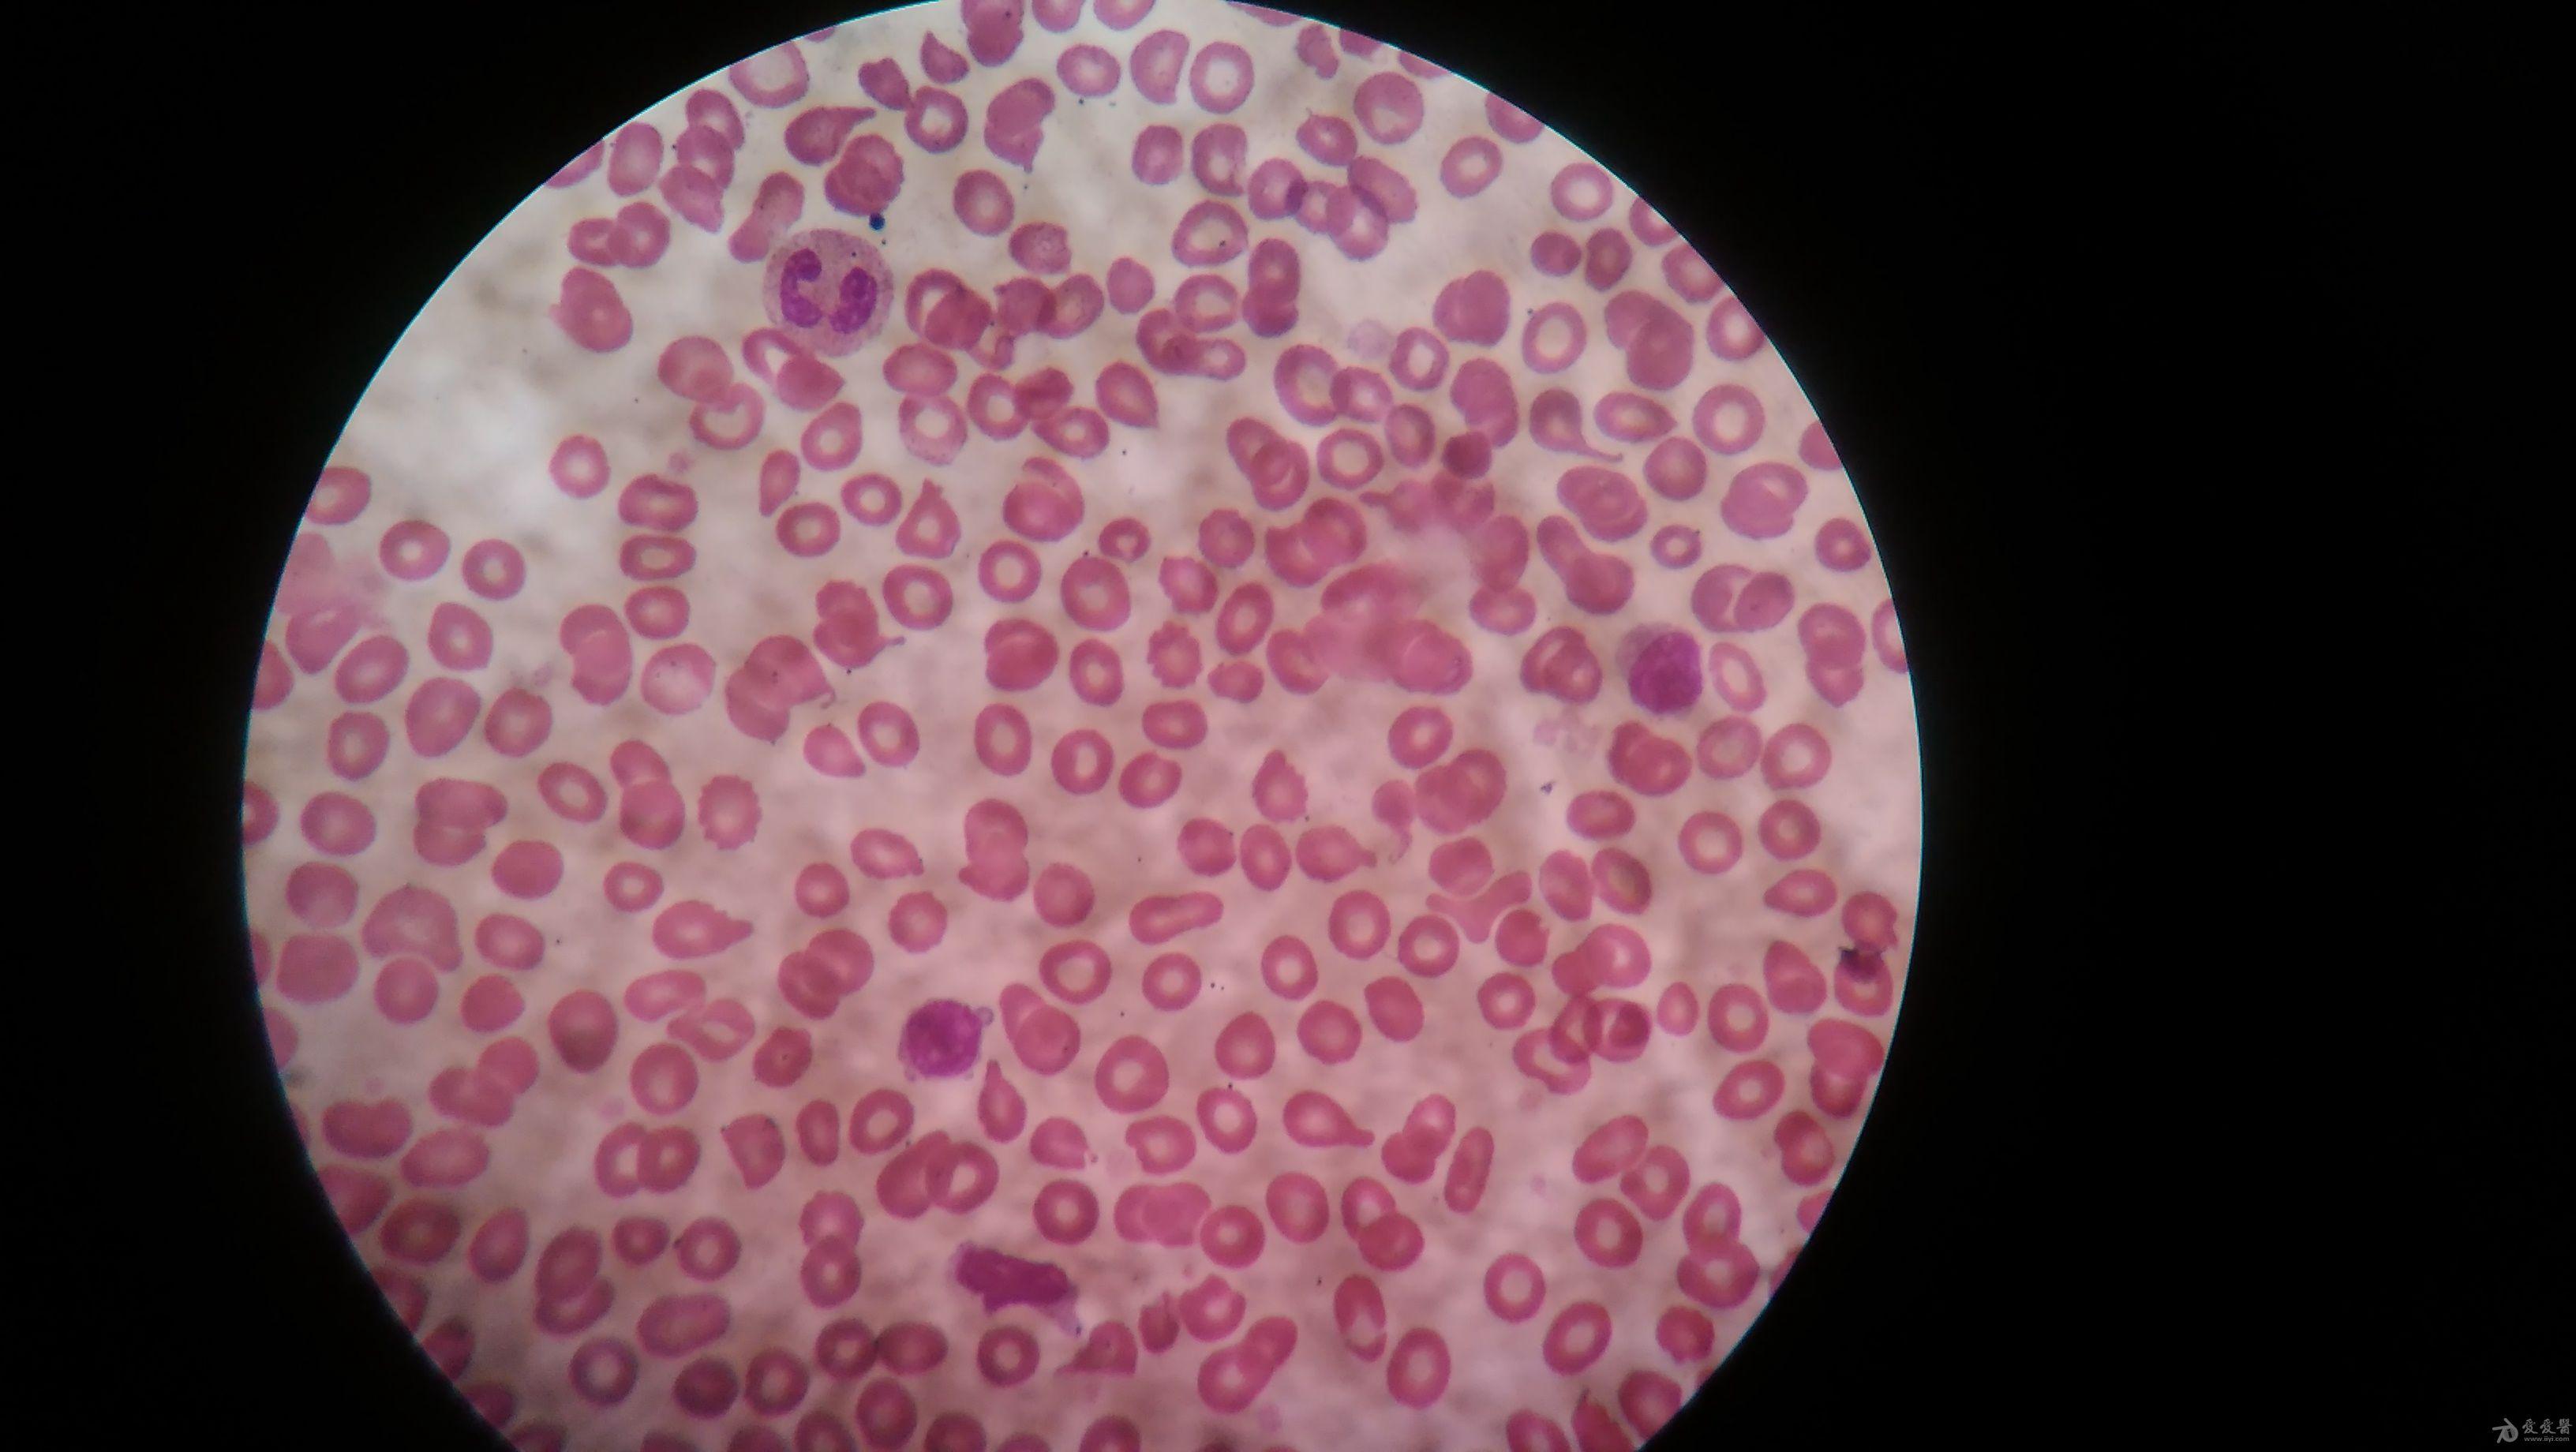 学涂片请教,下面血涂片有原始细胞吗 